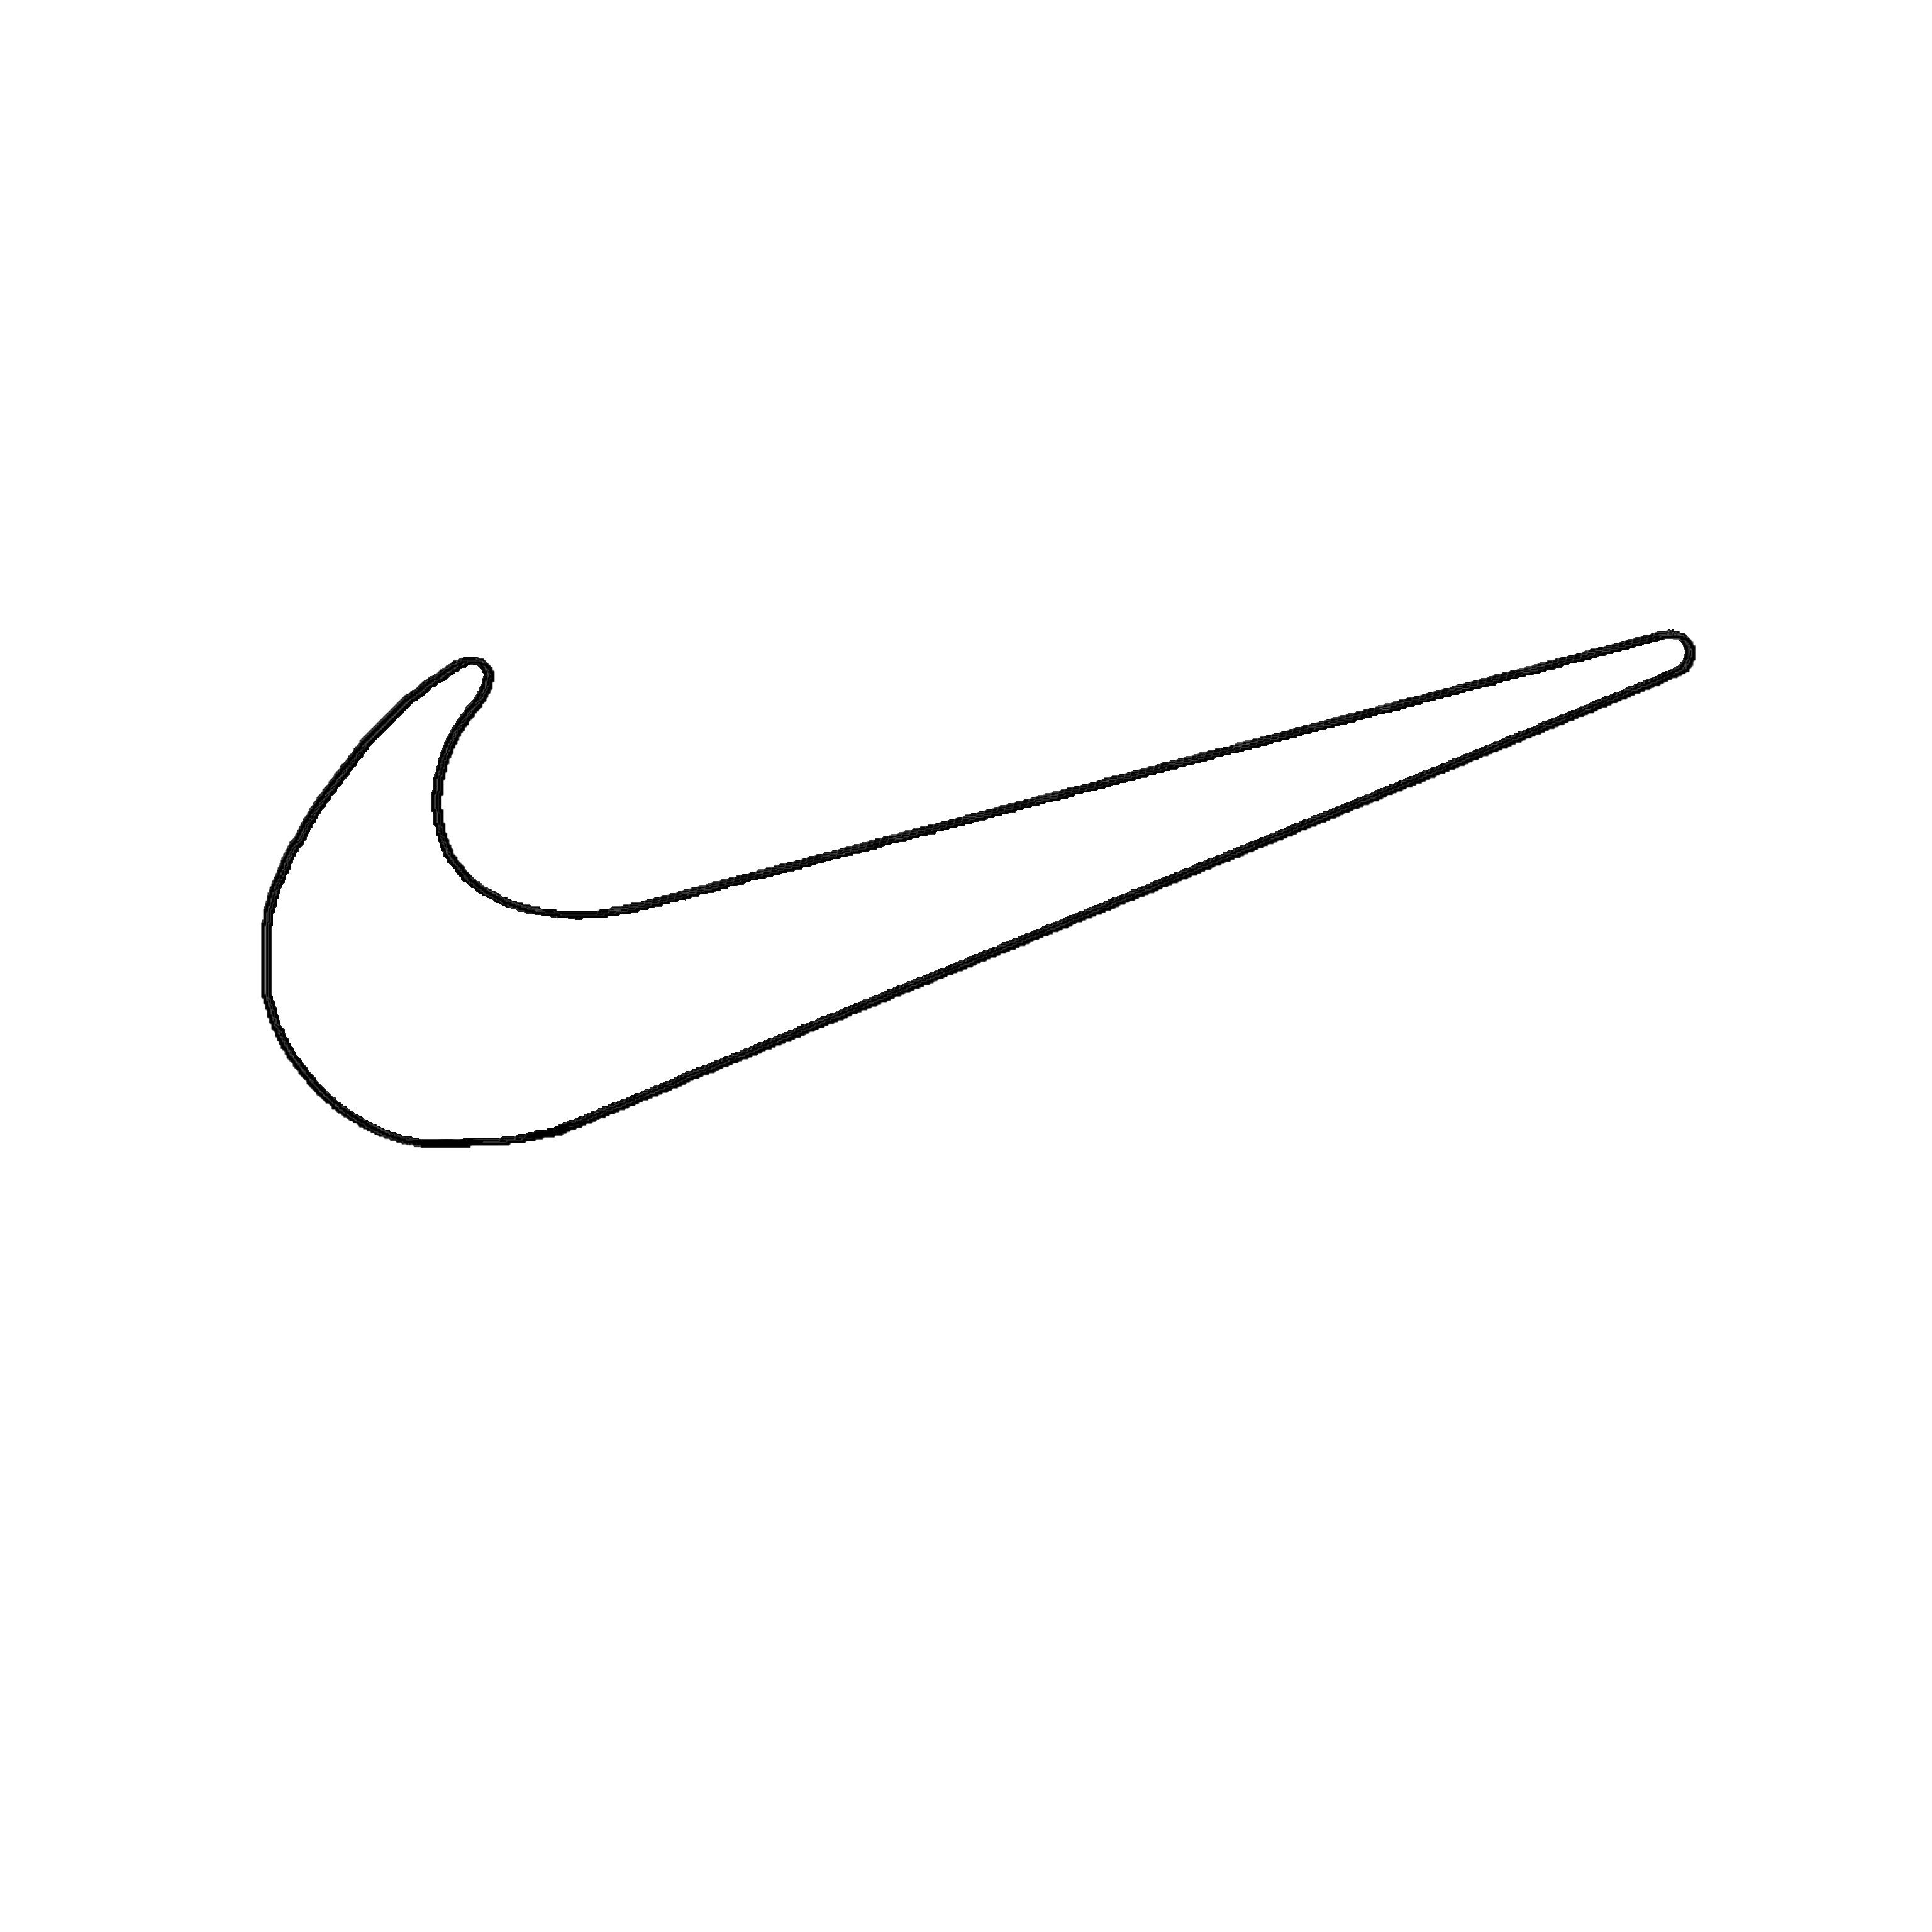 Распечатать найк. Nike Swoosh logo. Logo Nike Swoosh wallapernikenike. Найк лого 2020. Найк разукрашка.